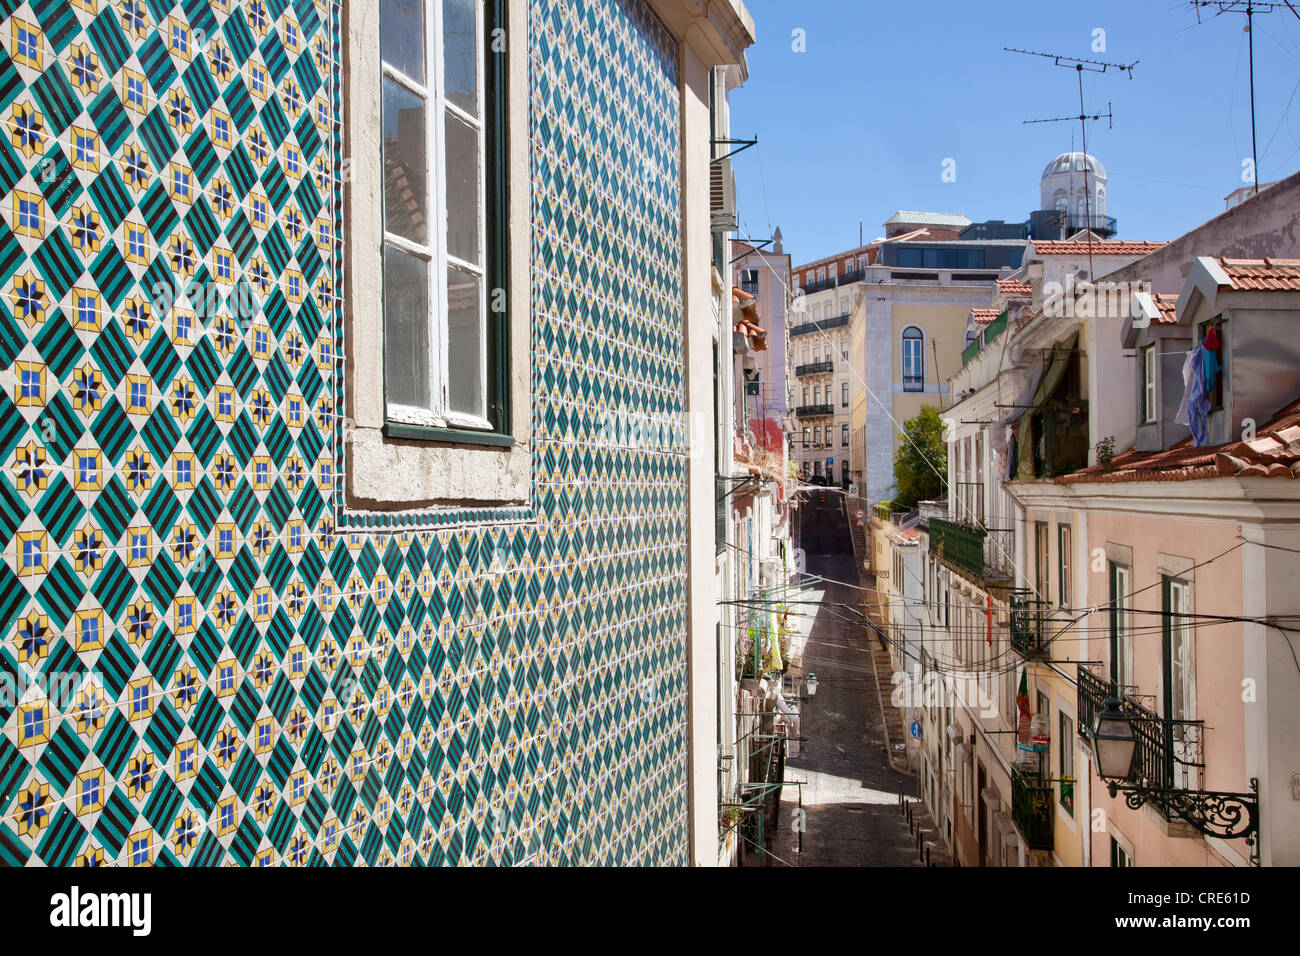 Façade de maison avec des tuiles colorées dans le quartier de Bairro Alto, Lisbonne, Portugal, Europe Banque D'Images